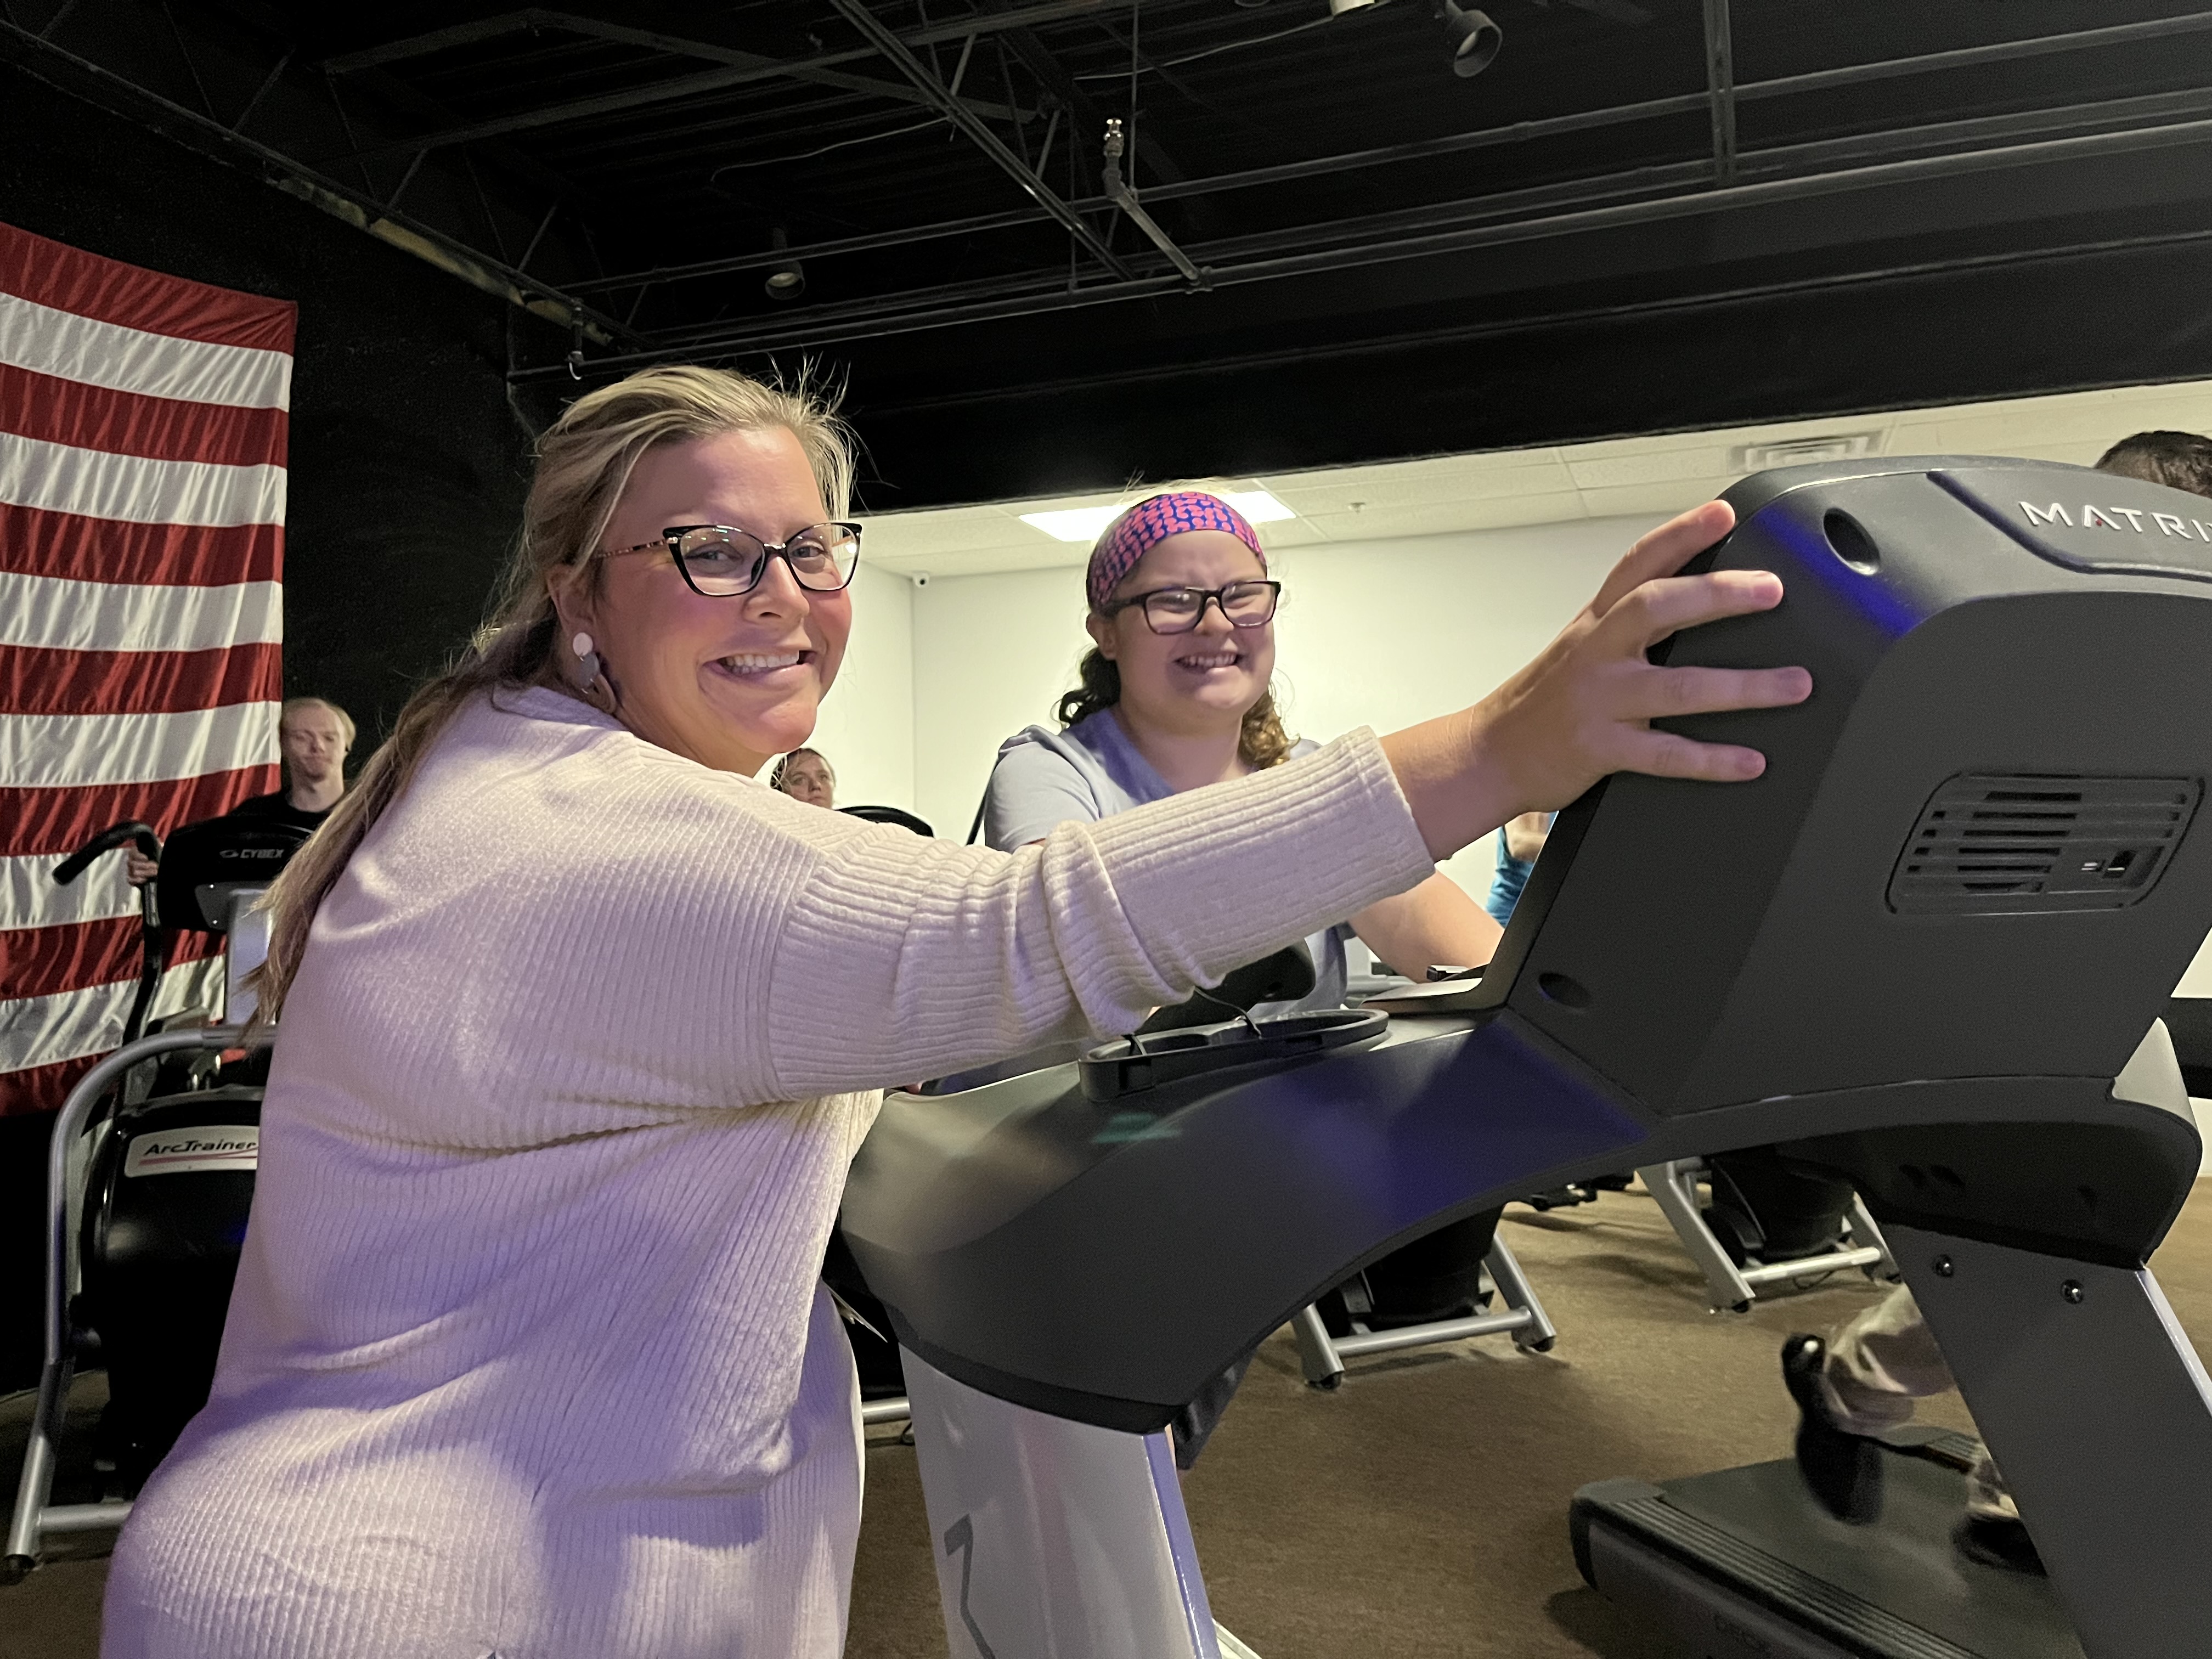 Teacher helping student on treadmill